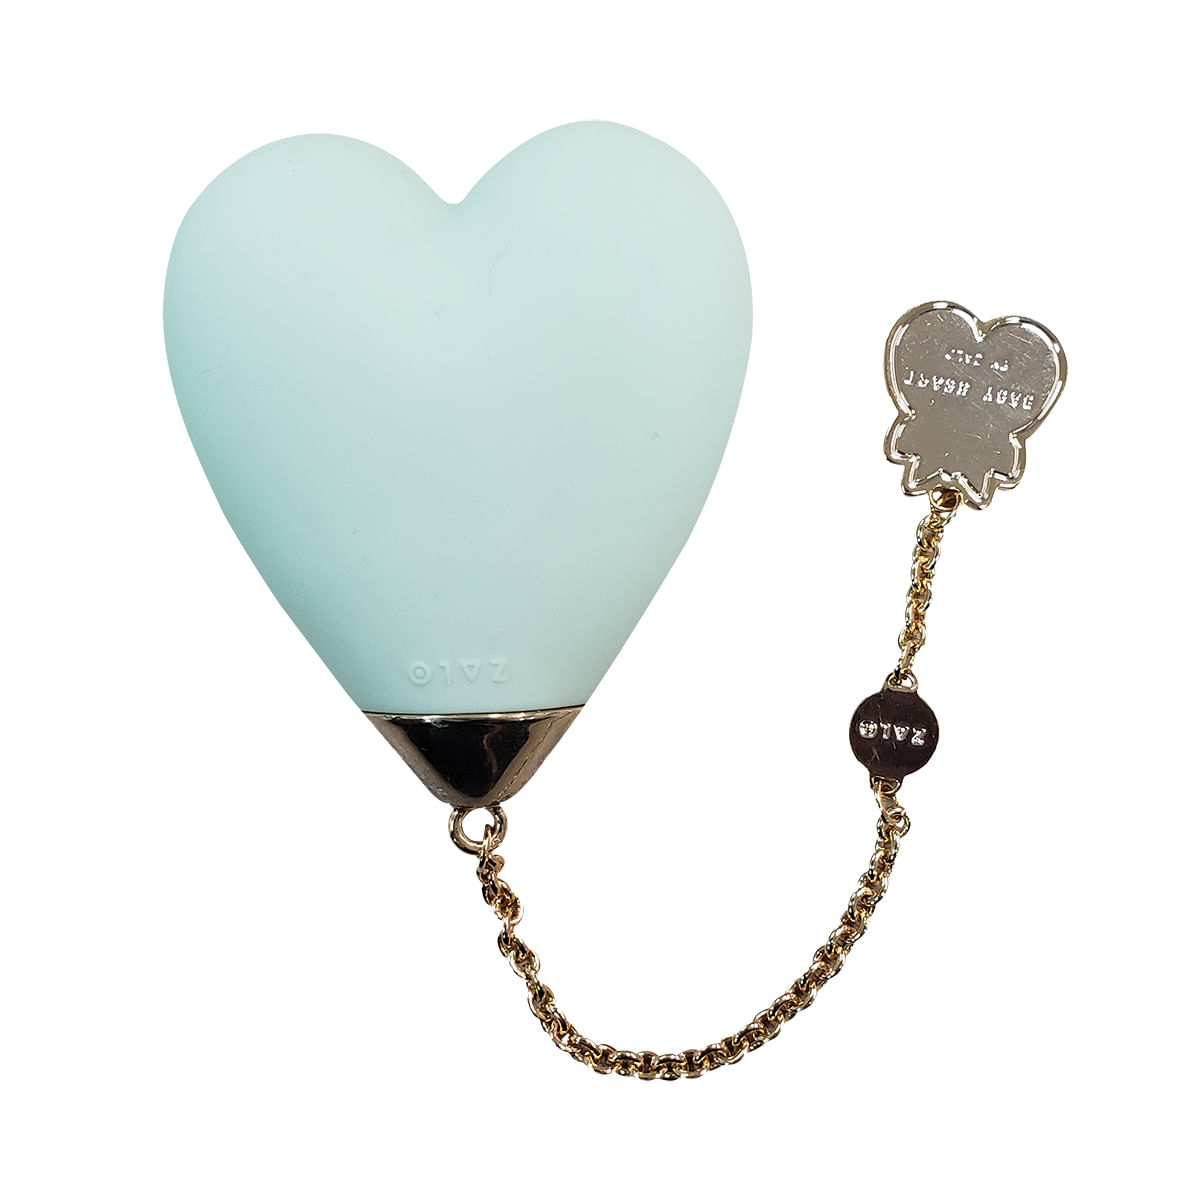 Zalo Lolita Baby Heart Vibrador Personal em Formato de Coração com 8 Modos de Vibração Adão e Eva